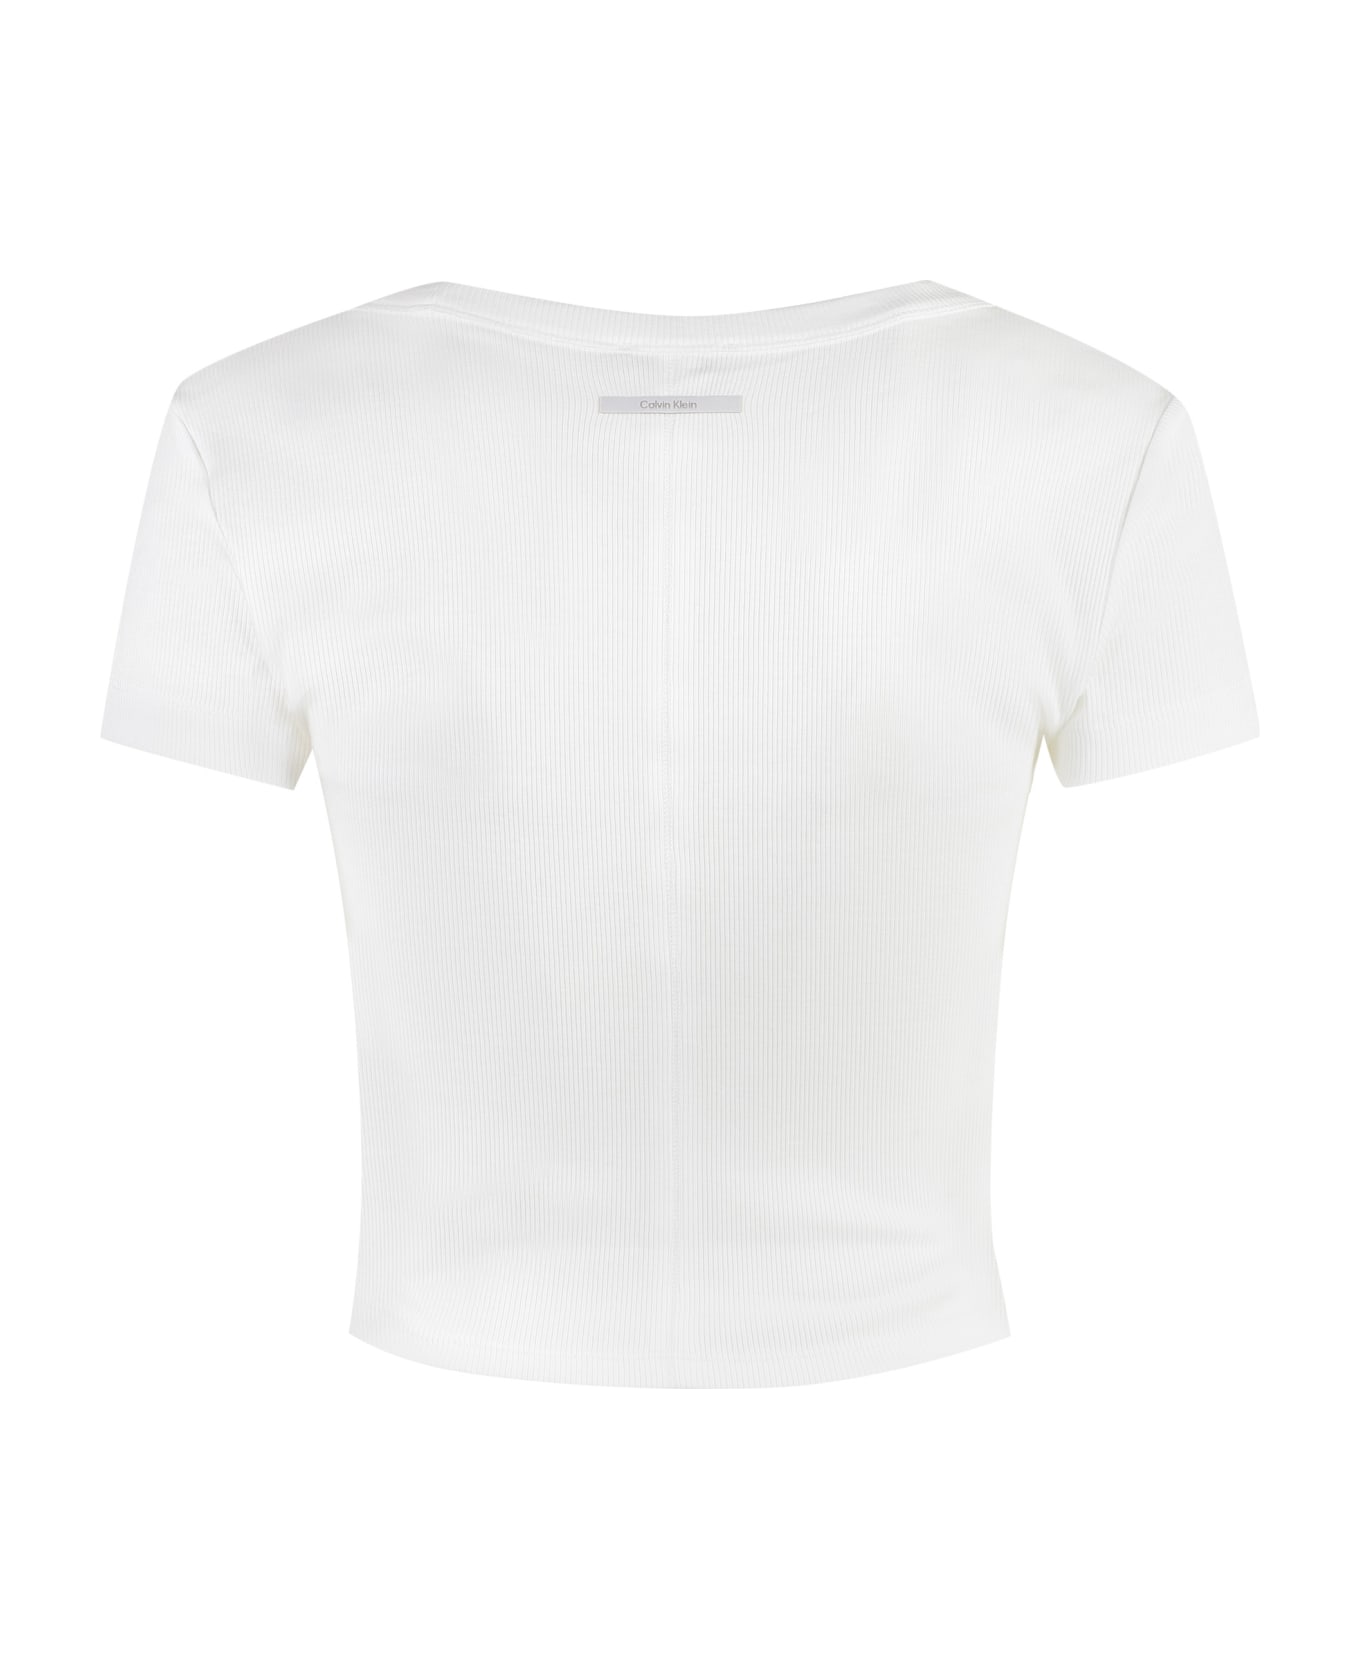 Calvin Klein Cotton Top - White Tシャツ